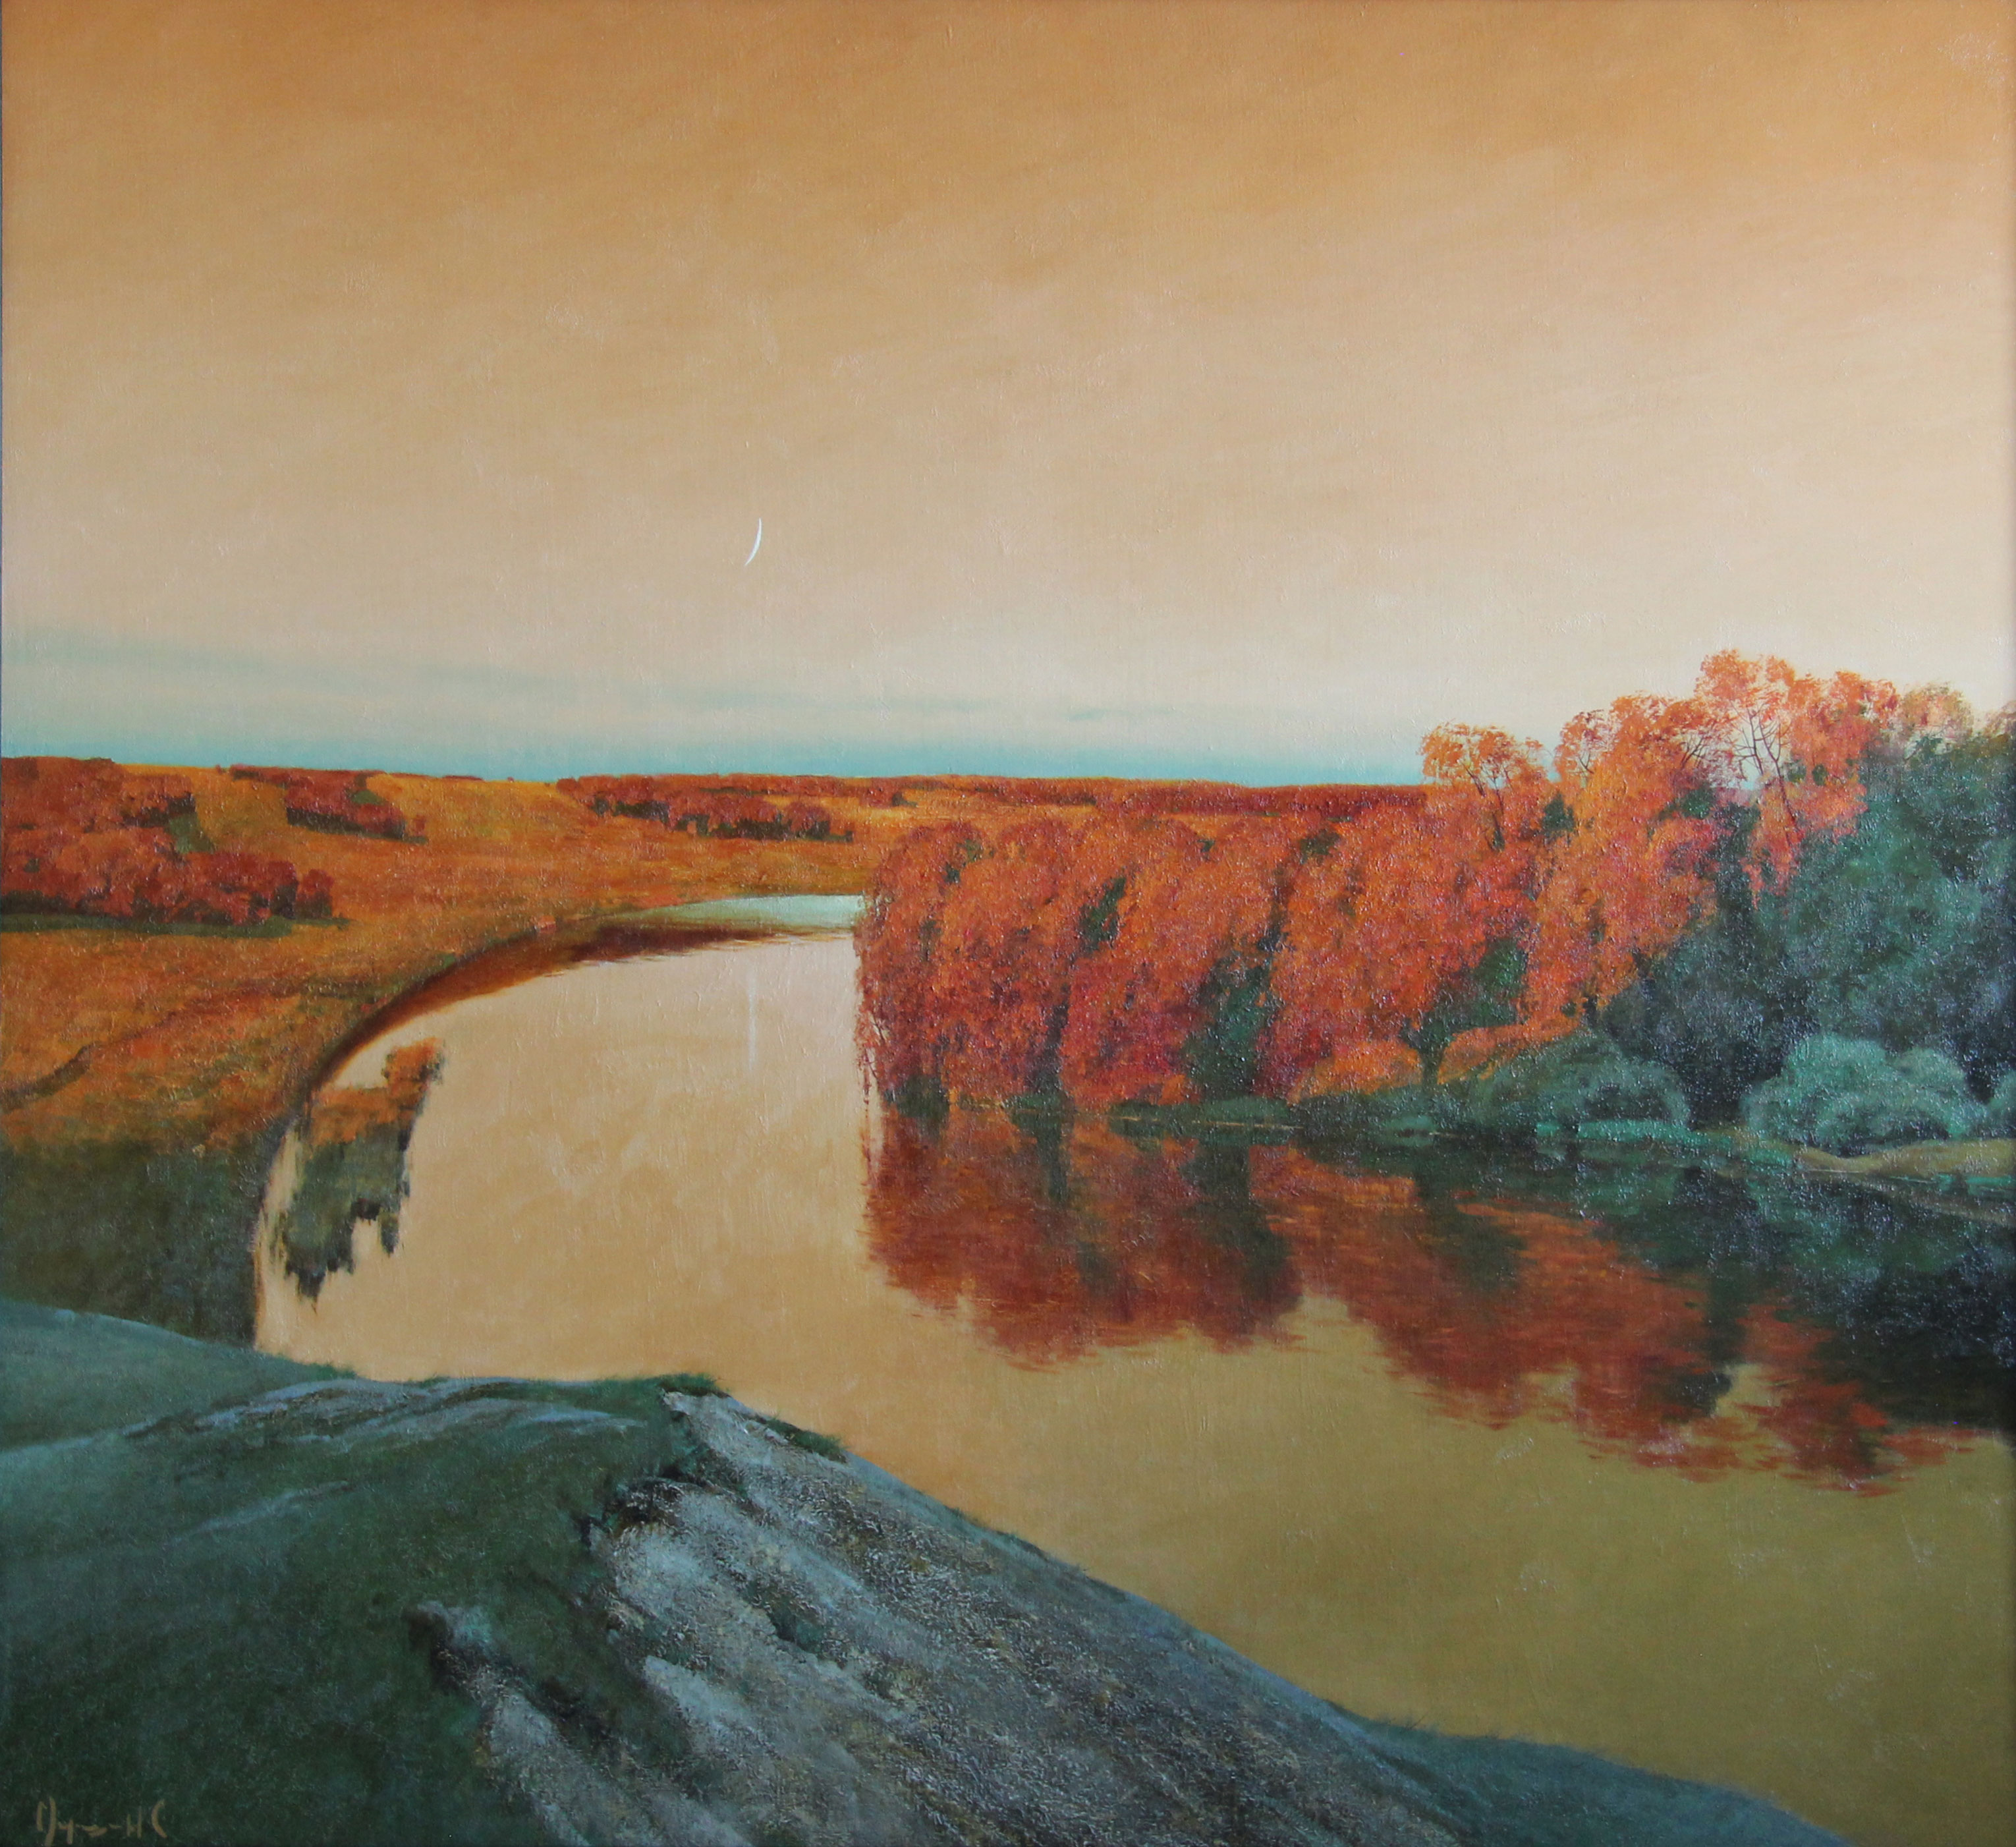 Sunset on the River - 1, Stas Miroshnikov, 买画 油